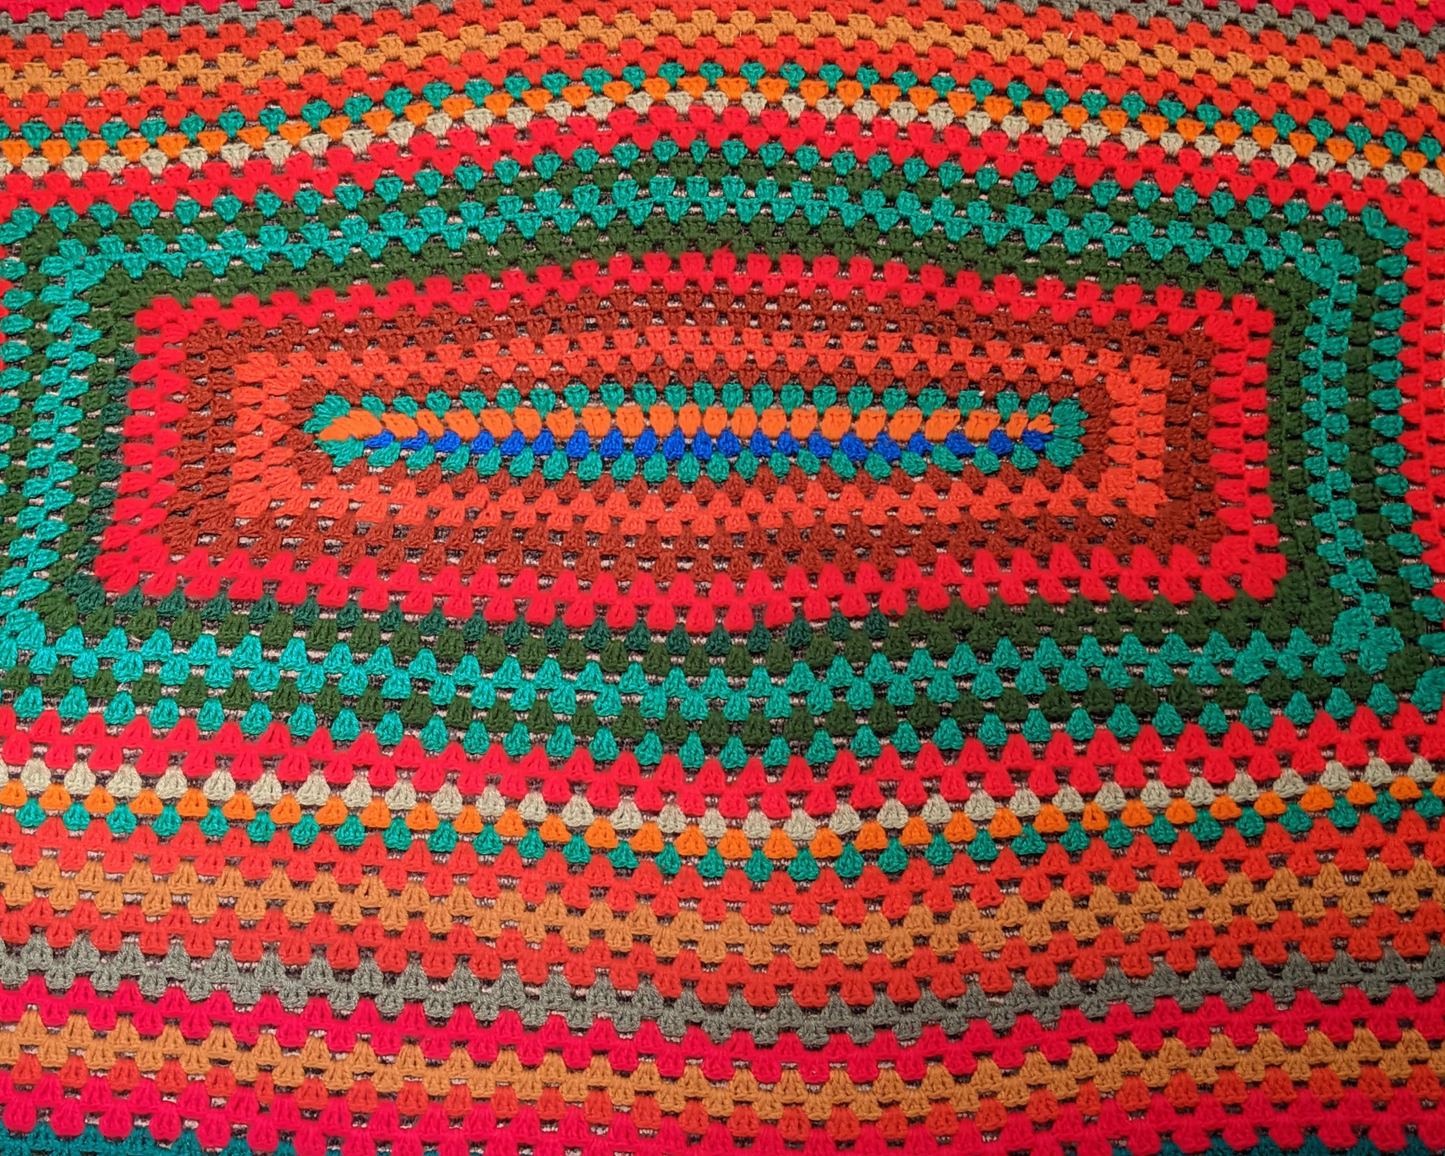 Couverture au crochet en laine colorée vintage des années 1970